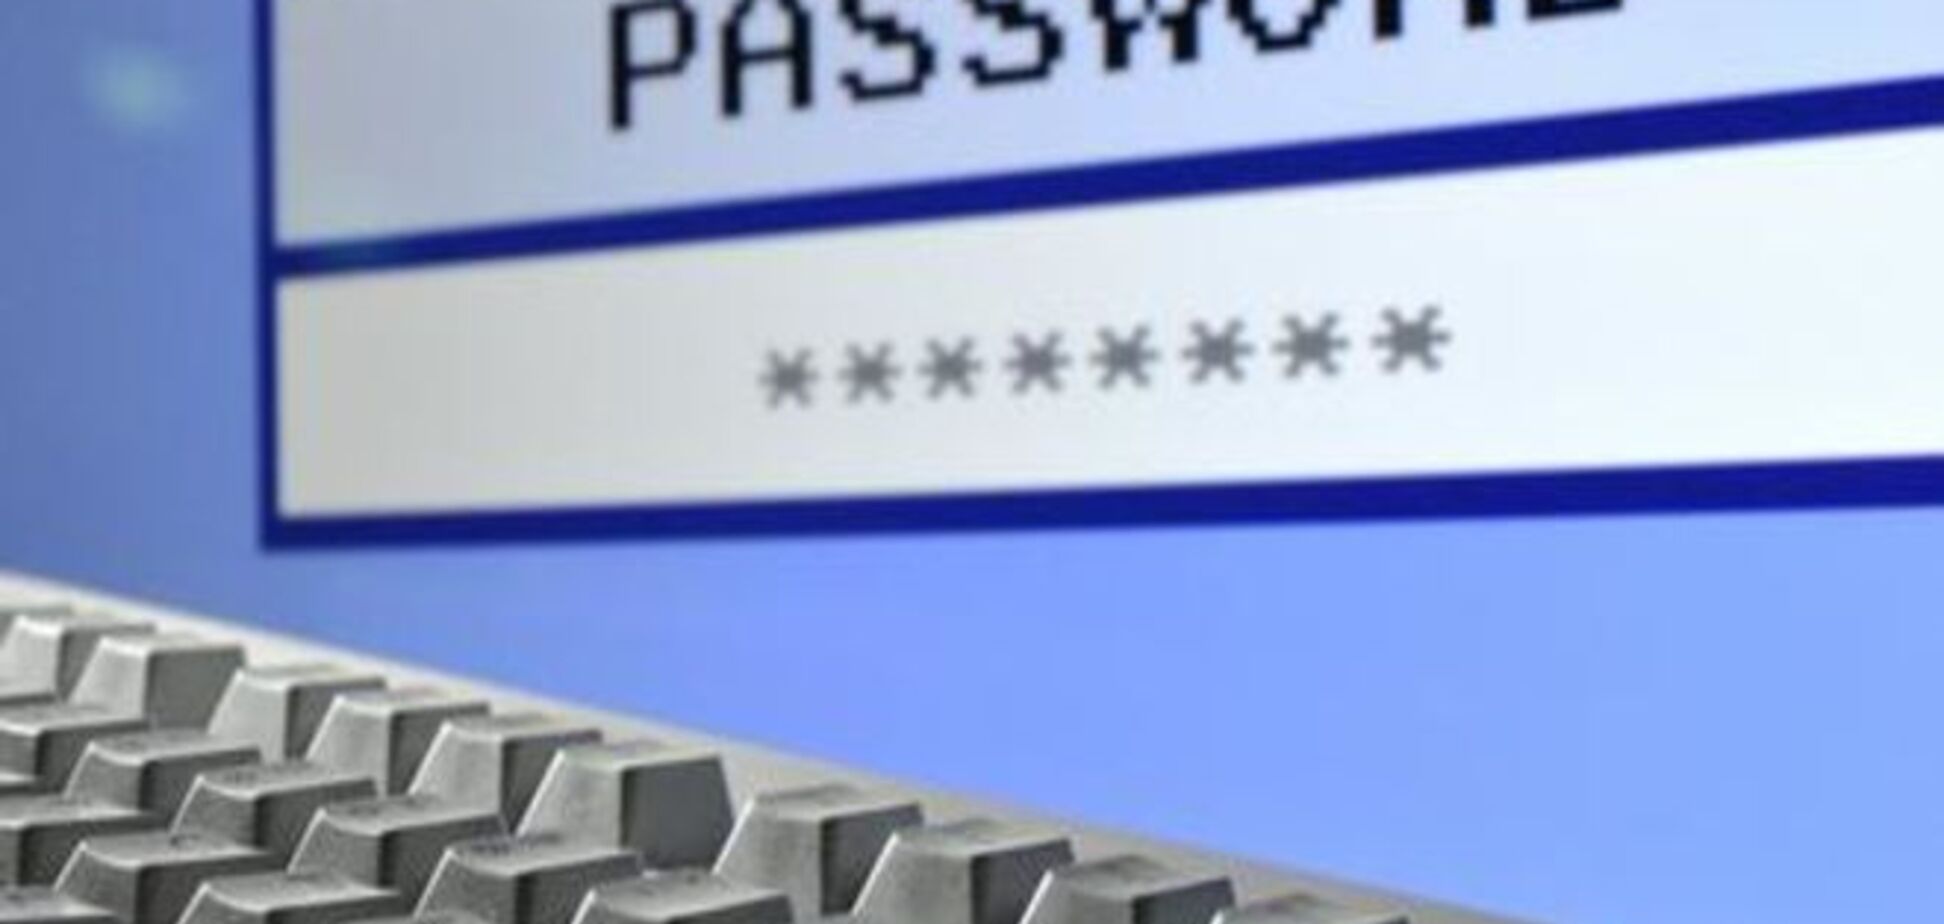 Германия готовится к кибервойнам: хакеры как новая угроза?